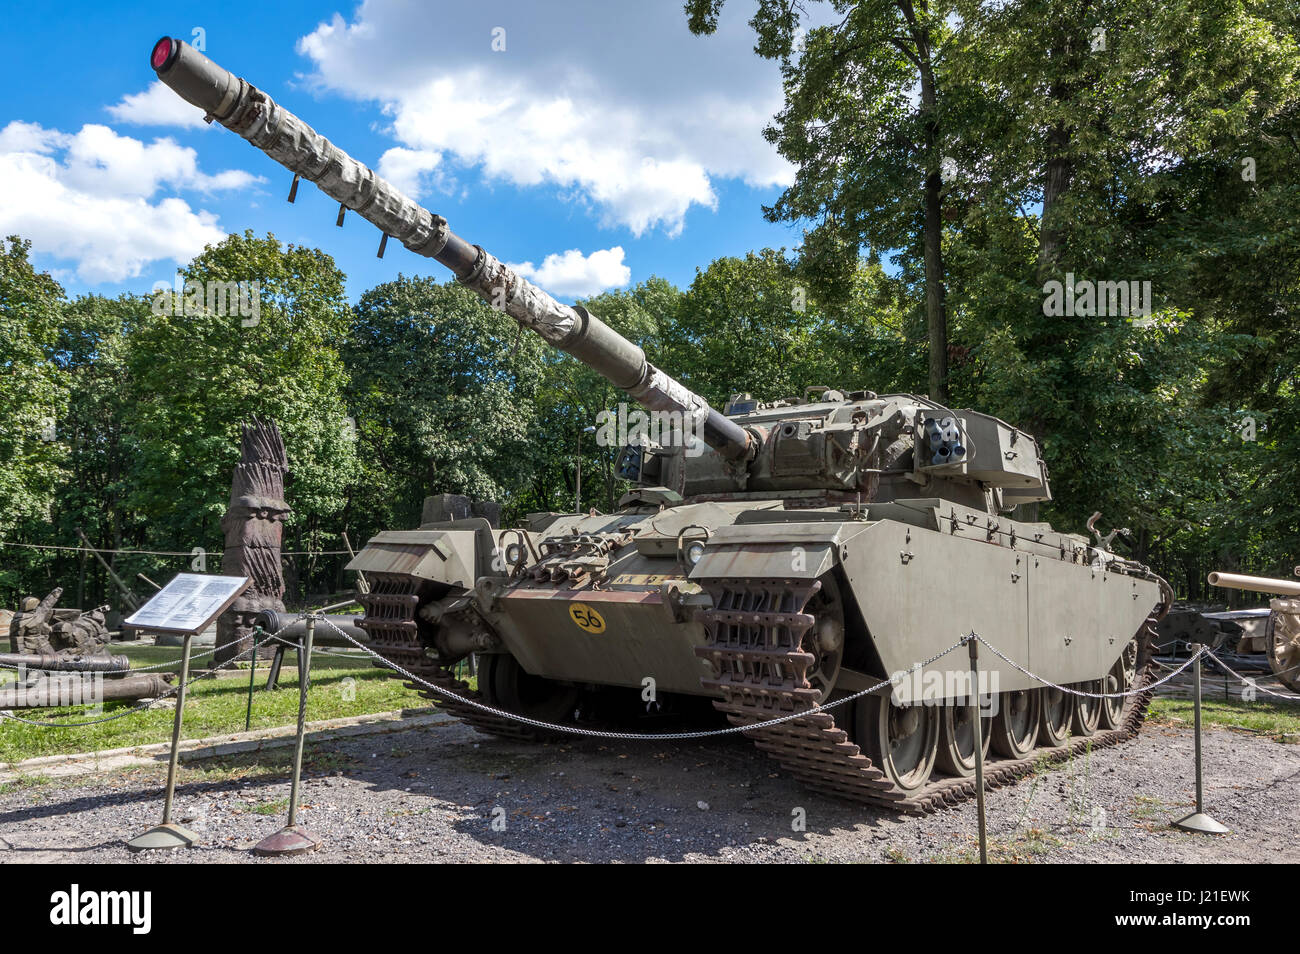 Centurion Mk 5, die bekanntesten britischen Kampfpanzer, eines der Displays im Museum der polnischeArmee - Warschau, Polen Stockfoto